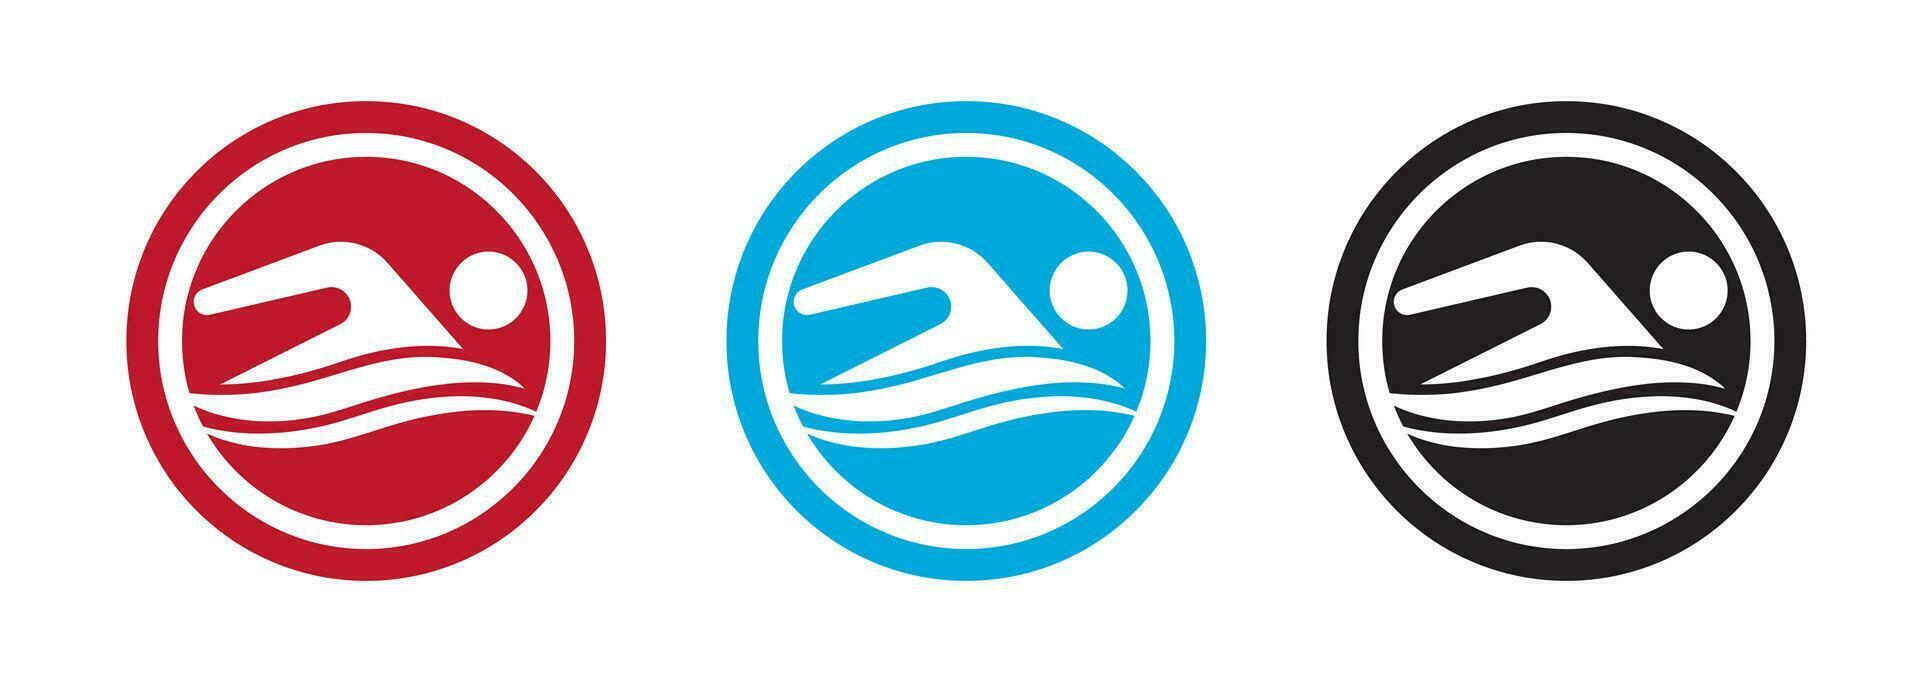 simma logotyp för Ansökan eller hemsida. simning mästerskap ikon. vektor